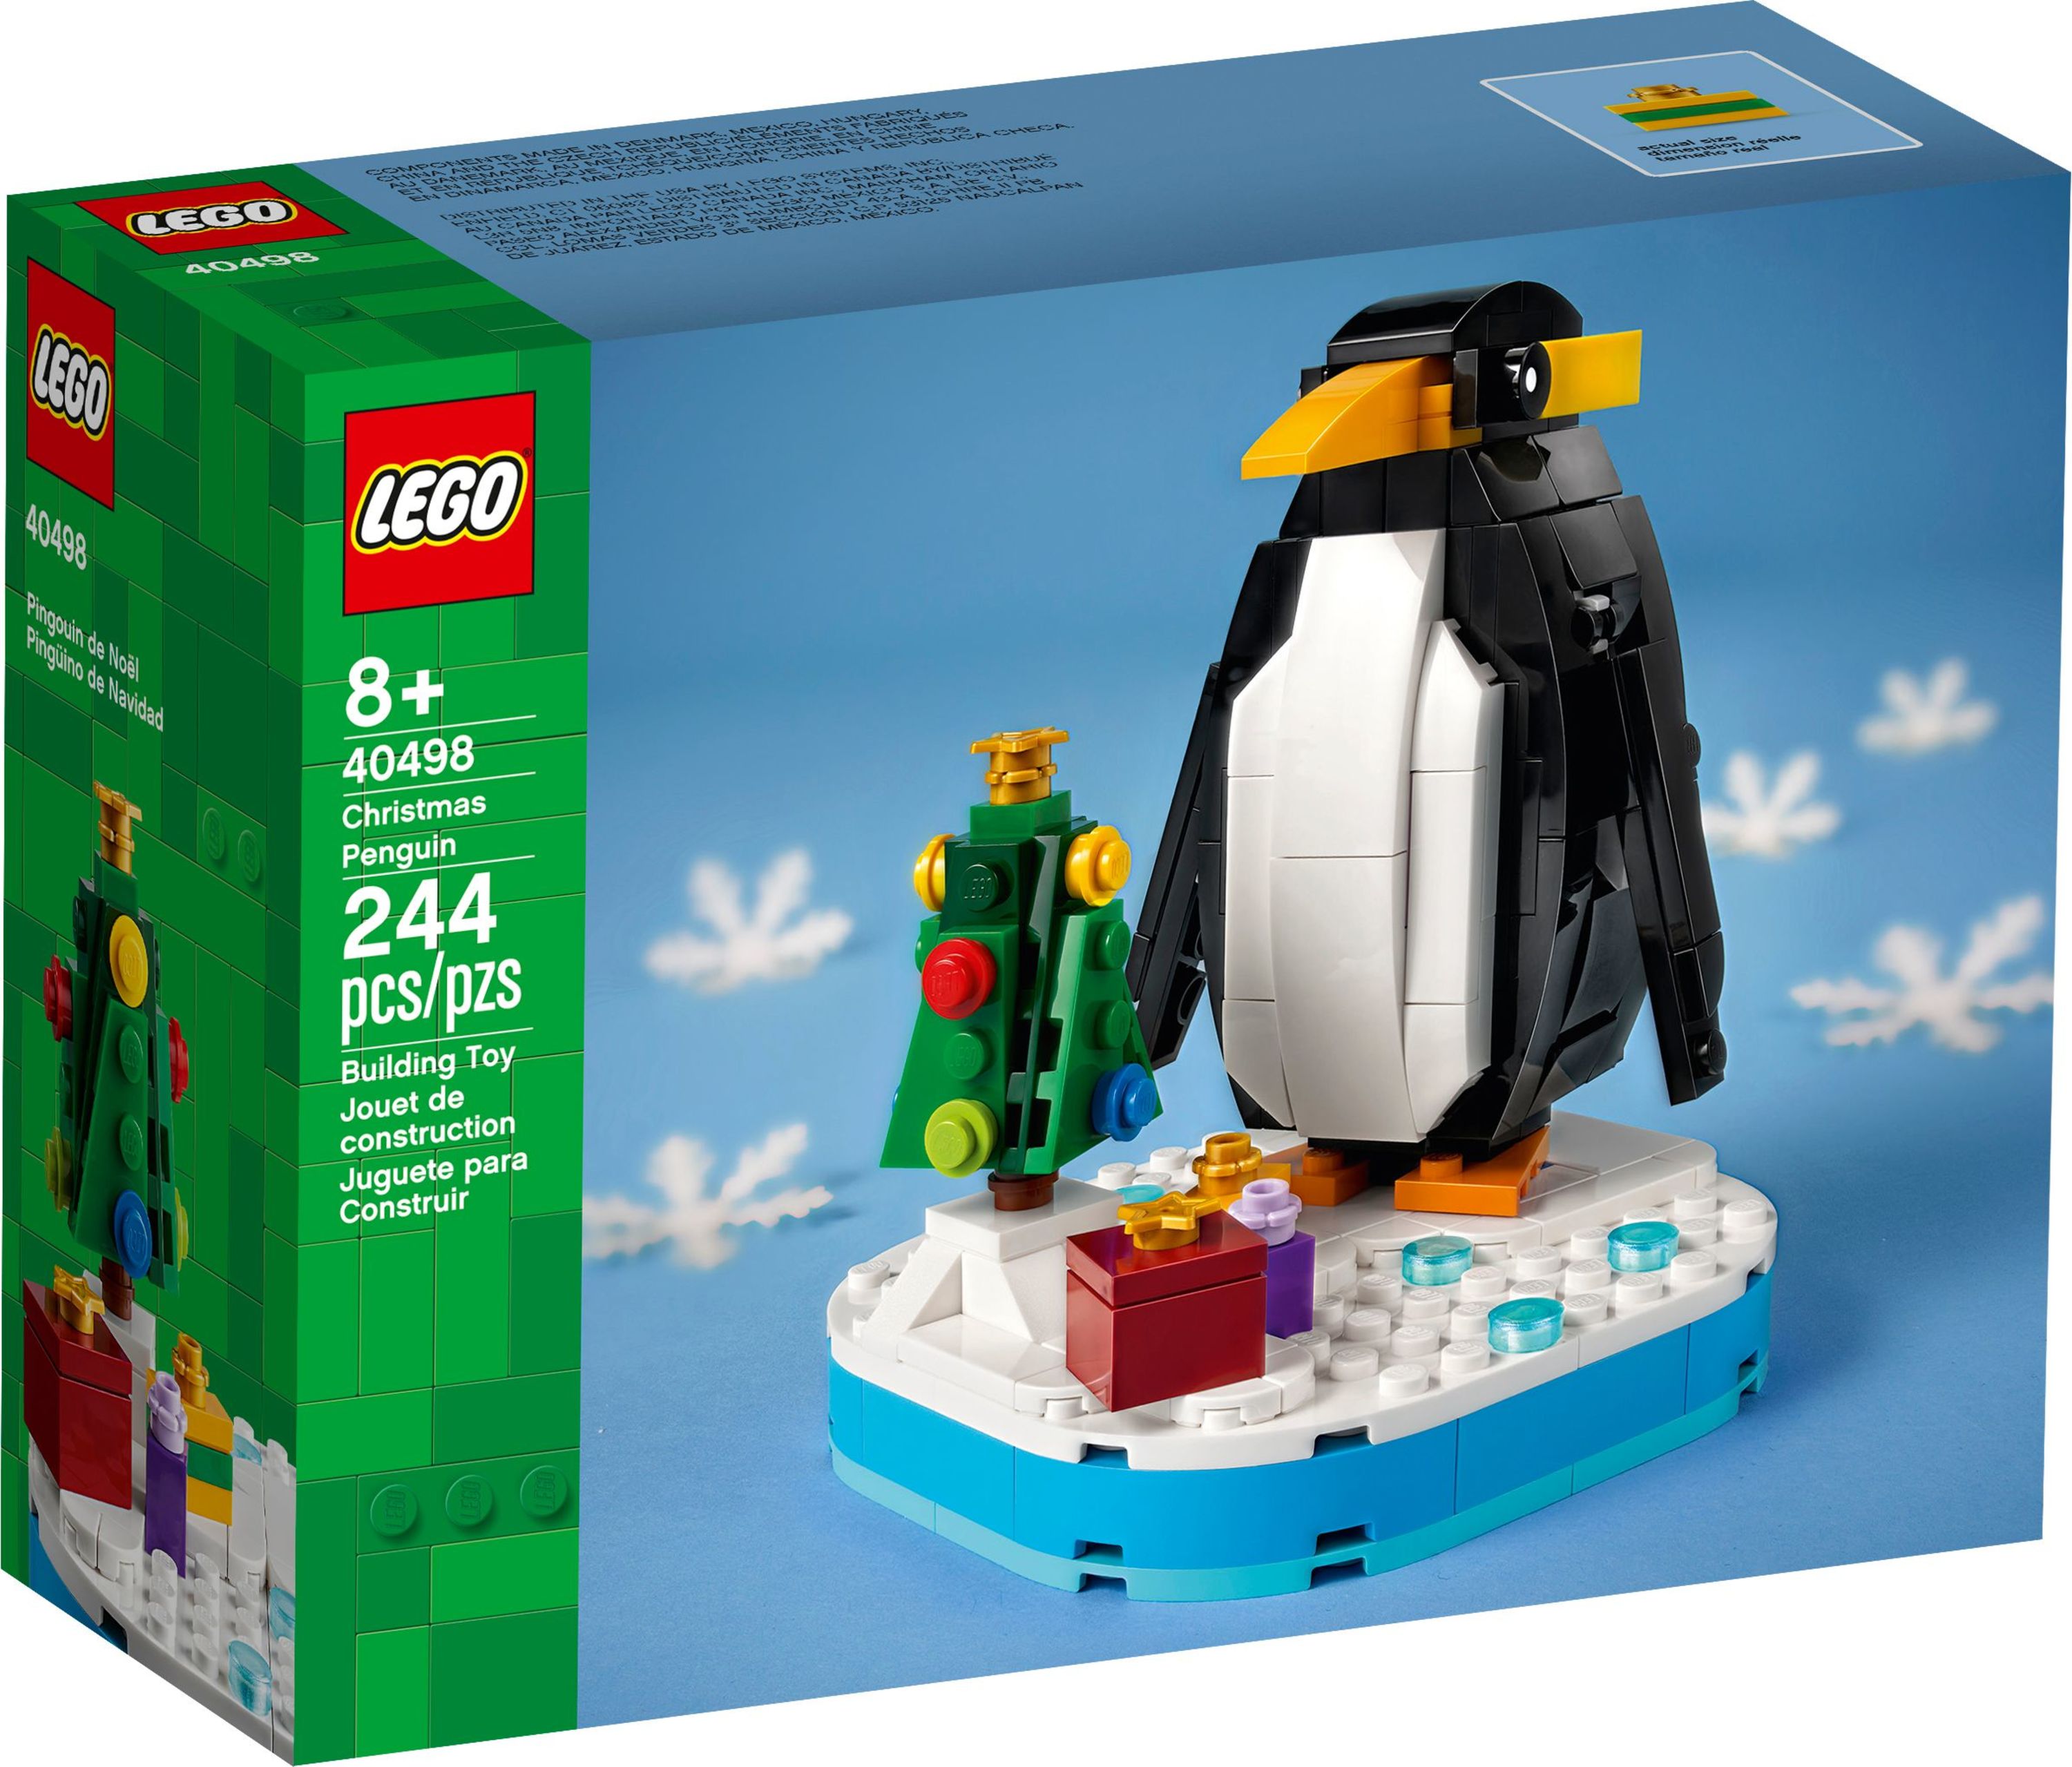 LEGO Christmas Penguin 40498 - image 1 of 4